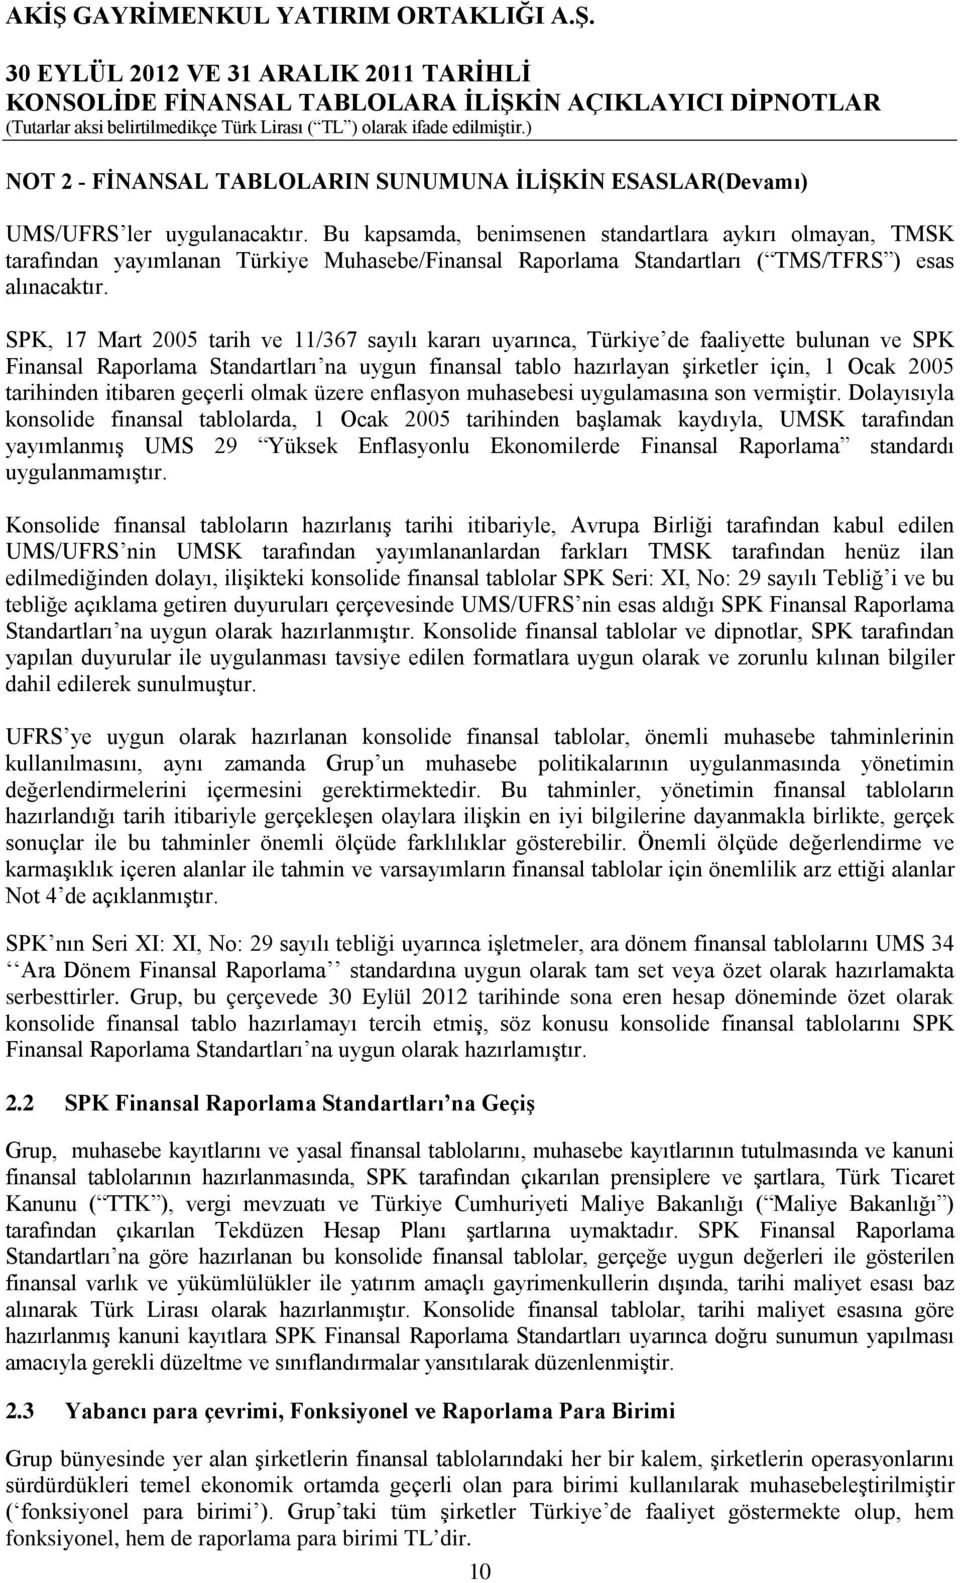 SPK, 17 Mart 2005 tarih ve 11/367 sayılı kararı uyarınca, Türkiye de faaliyette bulunan ve SPK Finansal Raporlama Standartları na uygun finansal tablo hazırlayan şirketler için, 1 Ocak 2005